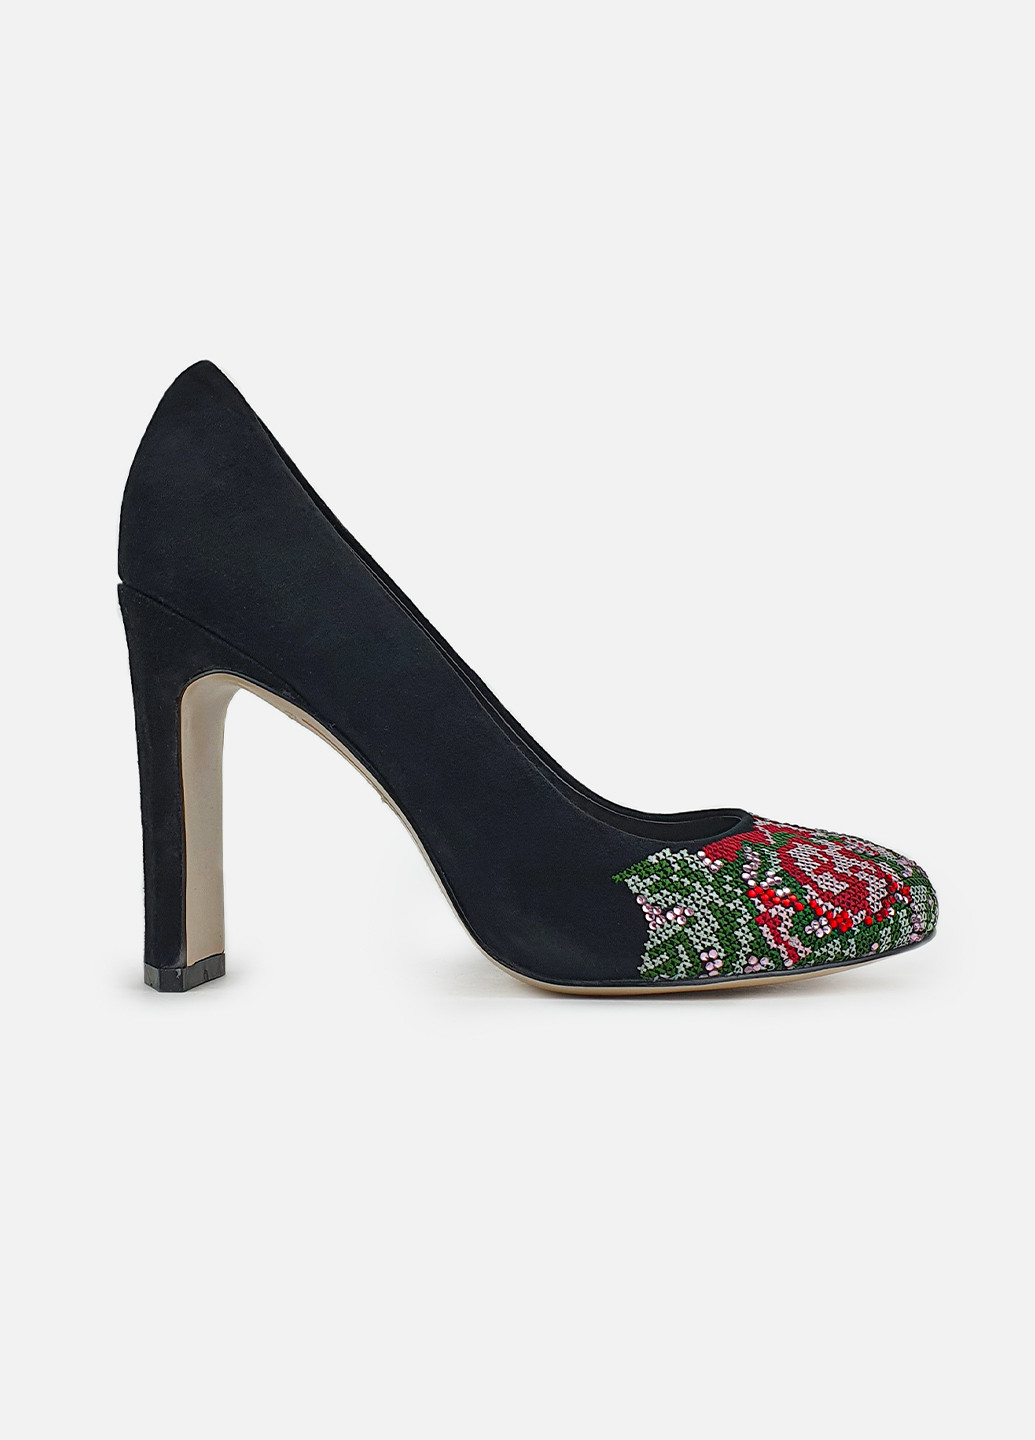 Женские туфли на каблуке черные замшевые с вышивкой Maria Moro